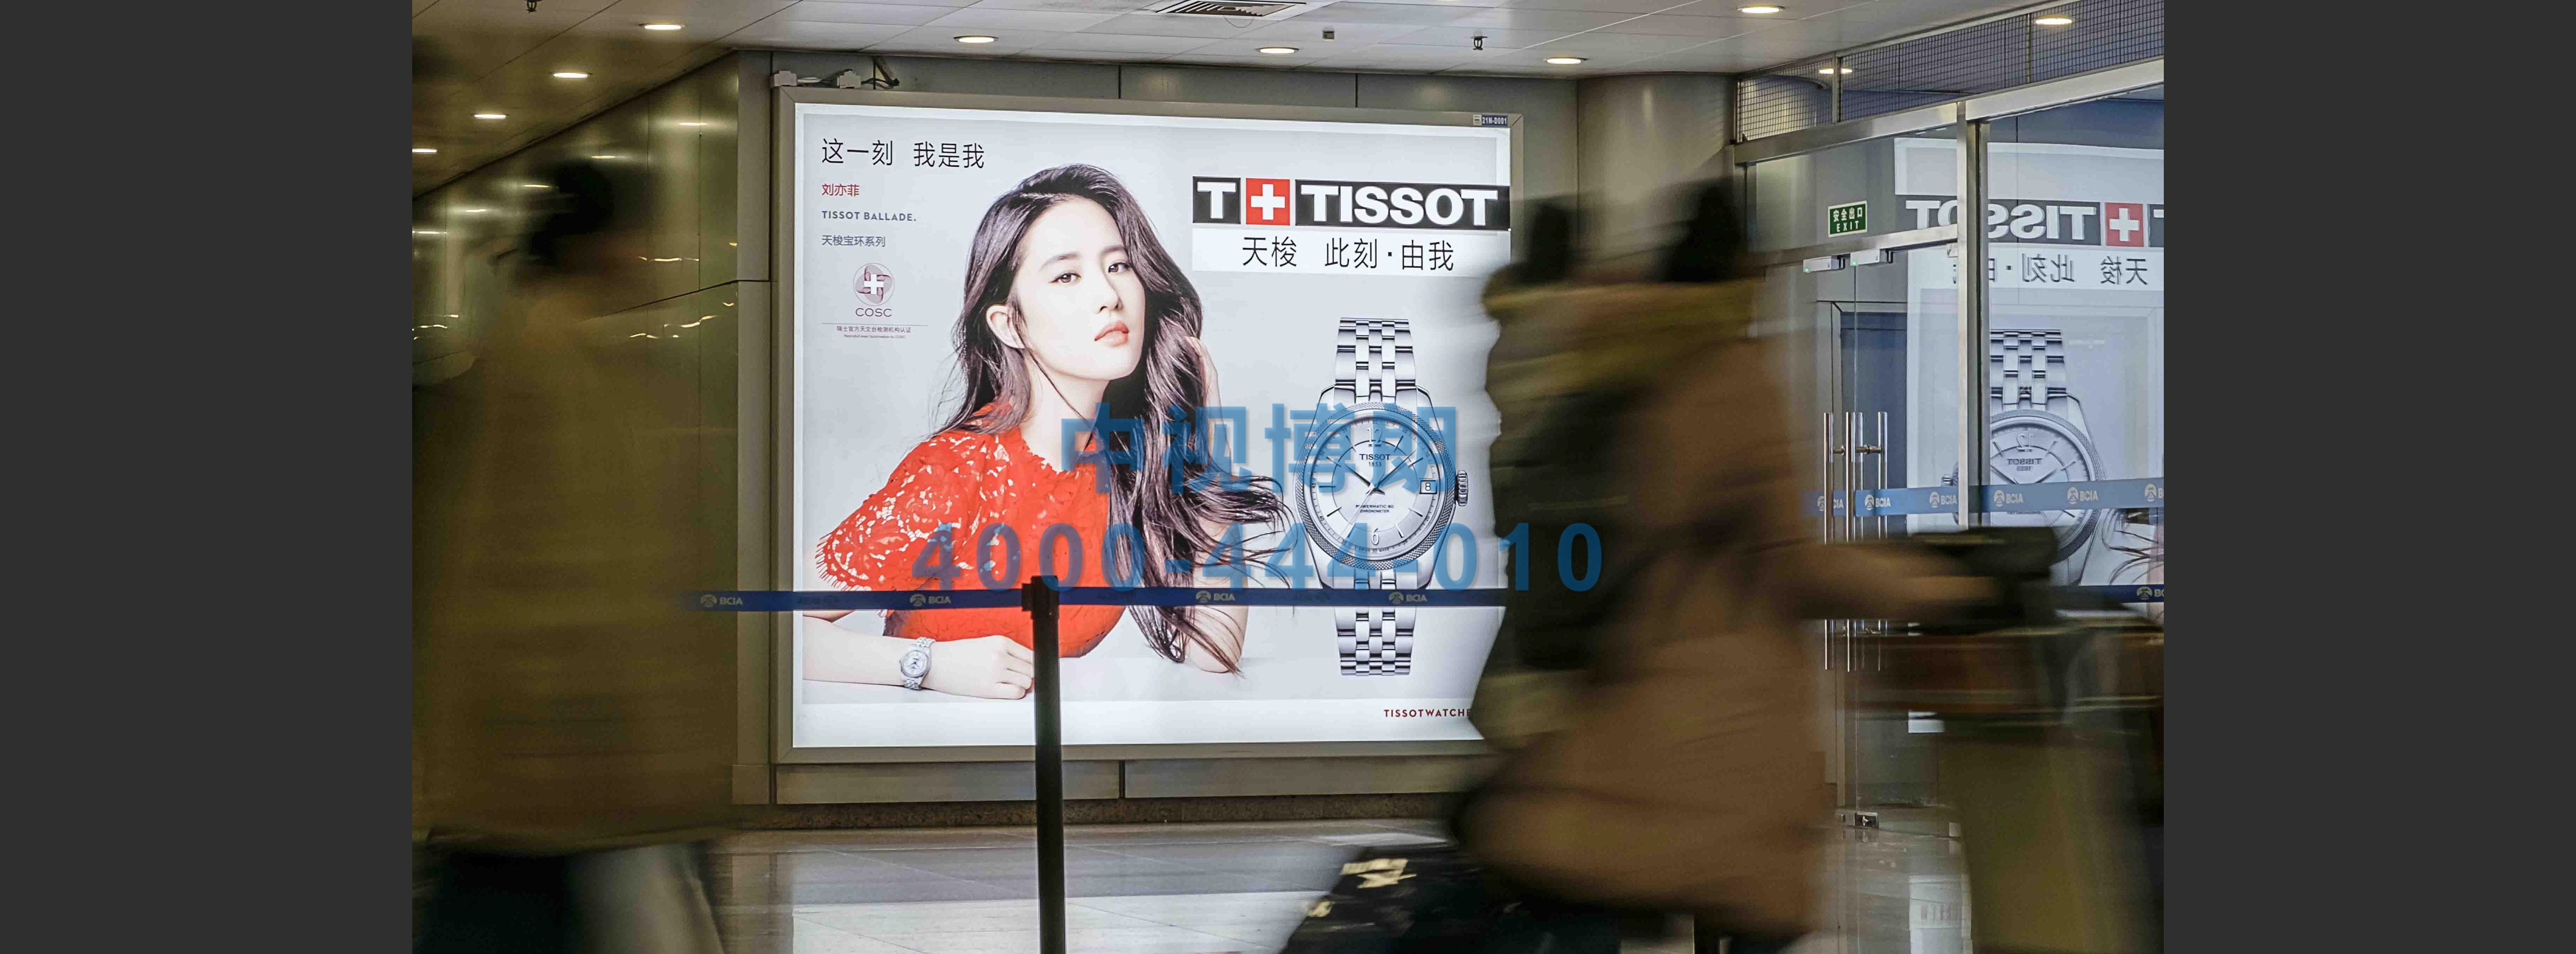 北京首都机场广告-T2国内到达行李厅灯箱套装